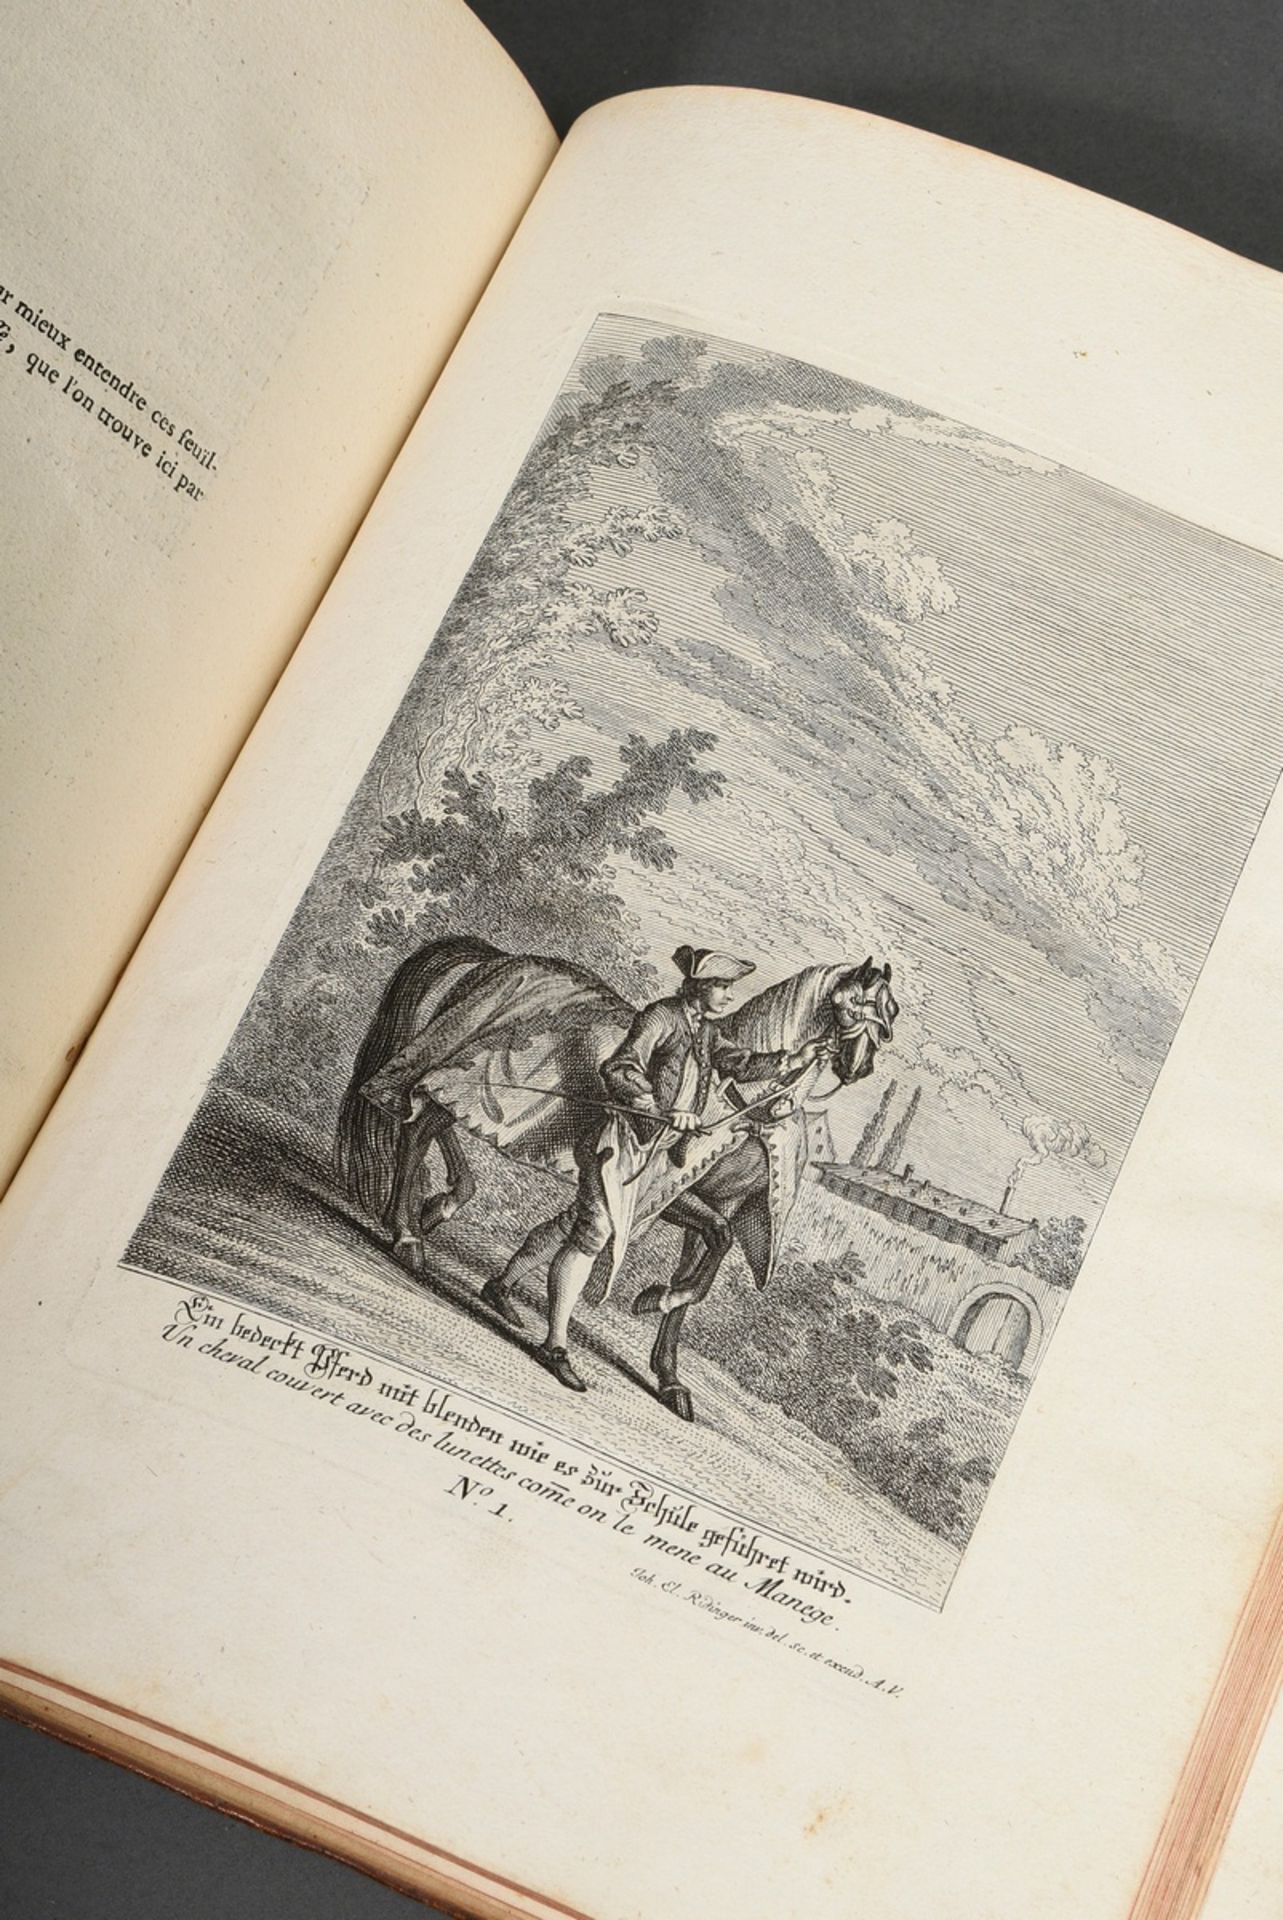 Volume "Vorstellung und Beschreibung derer Schul und Campagne Pferden nach ihren Lectionen..." 1760